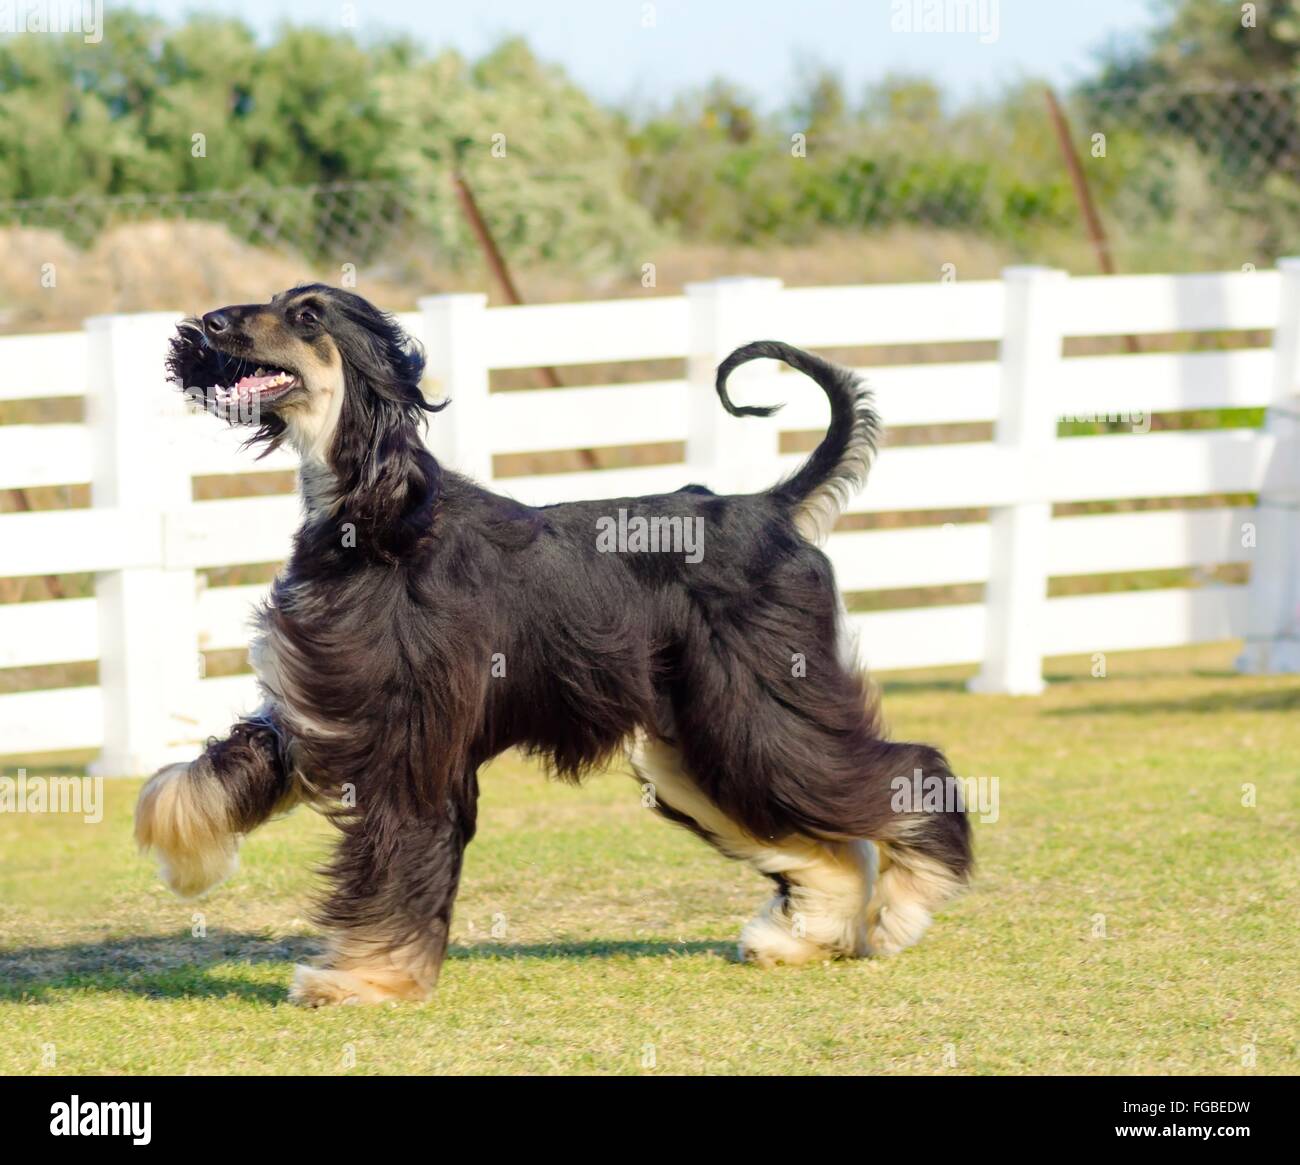 Ein Profil-Blick auf eine gesunde schöne Grizzle, Black And Tan, Afghanischer Windhund zu Fuß auf dem Rasen suchen glücklich und fröhlich. Pers Stockfoto